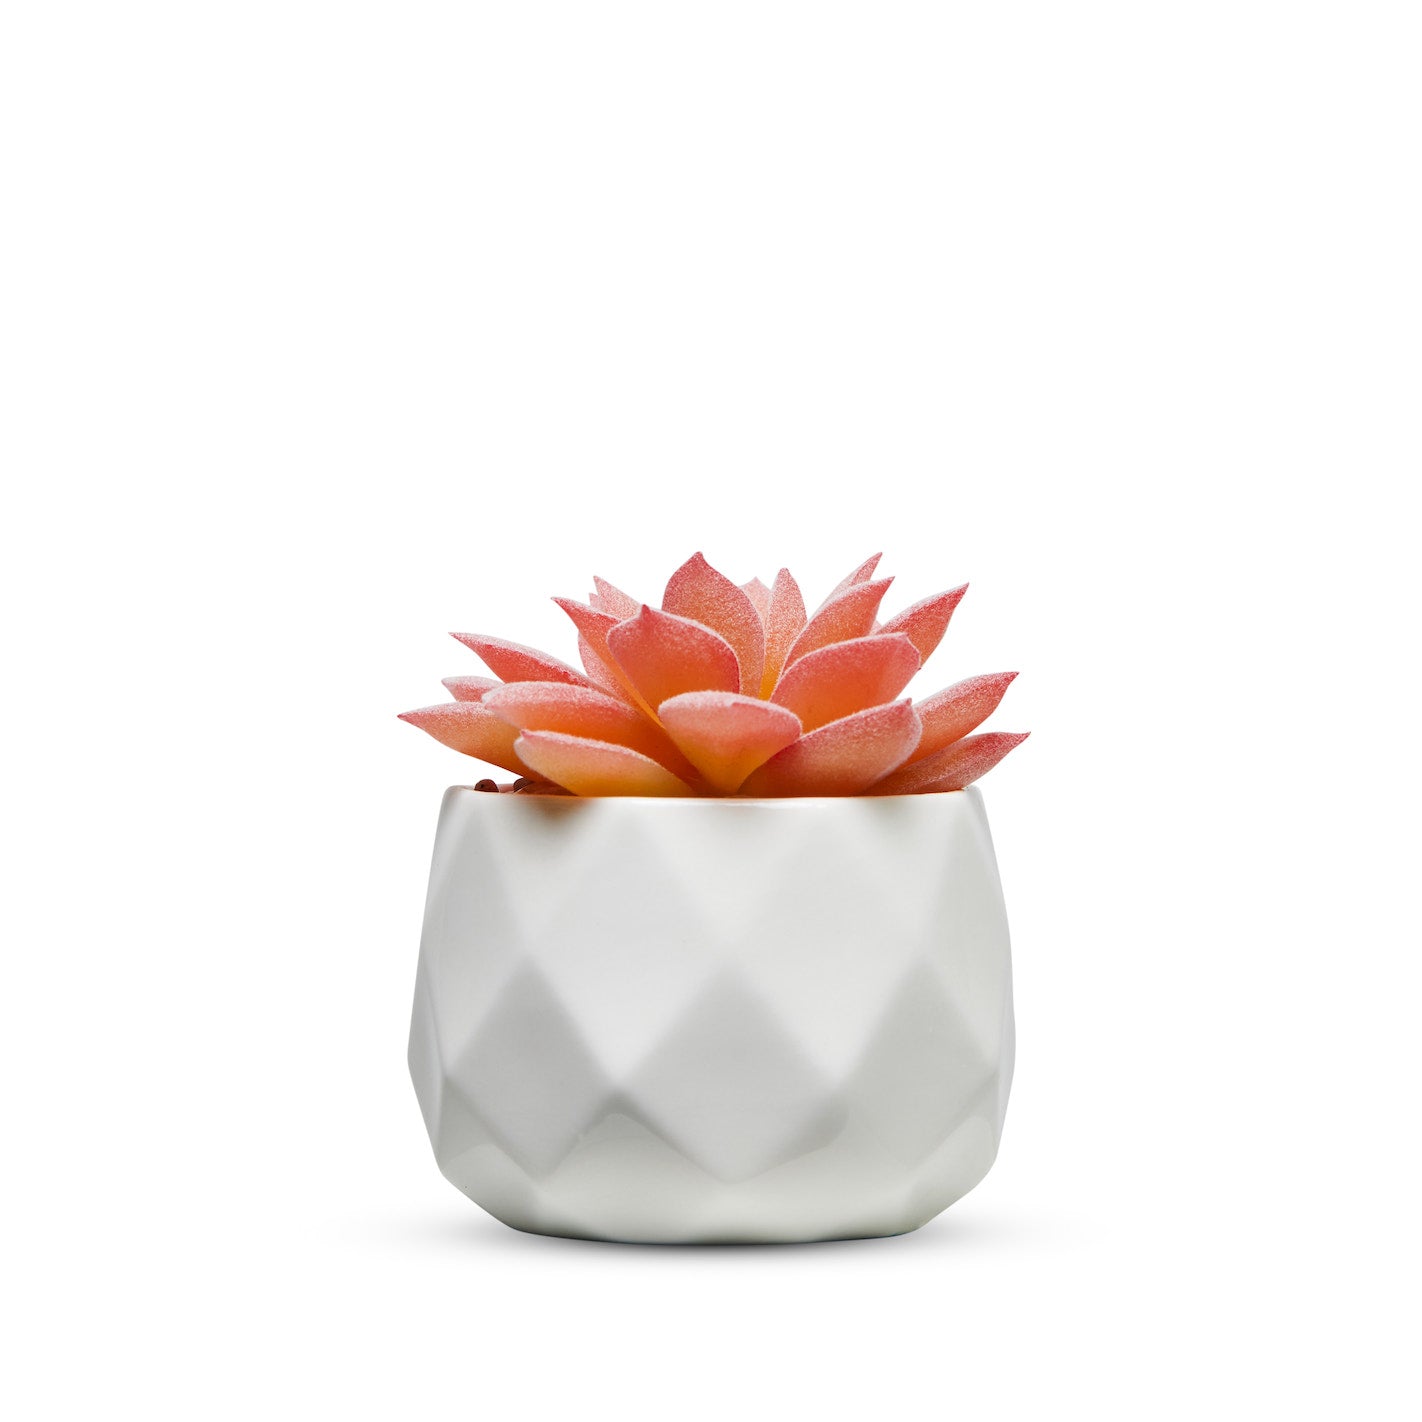 Pink Desk Plants in Ceramic White Pots